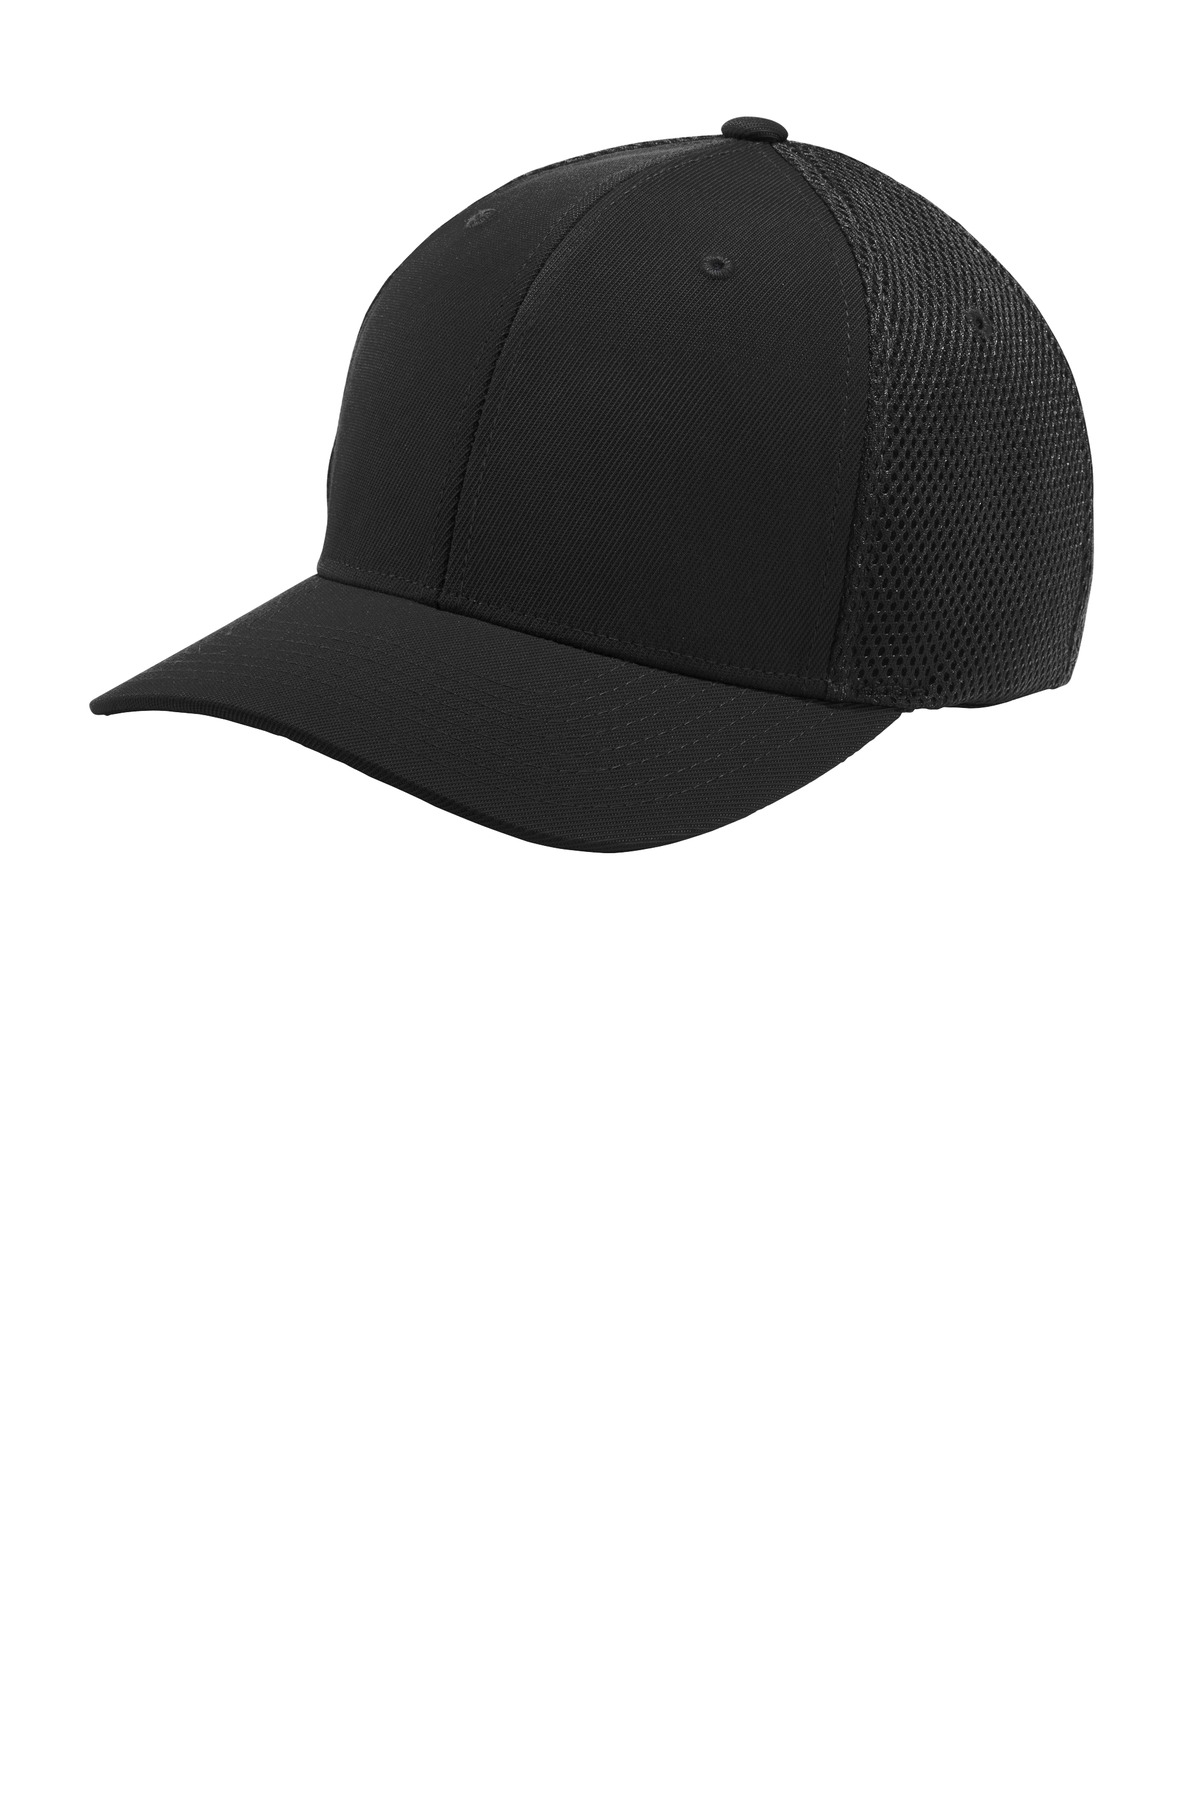 Sport-Tek ® Flexfit ® Air Mesh Back Cap. STC40 - Custom Shirt Shop